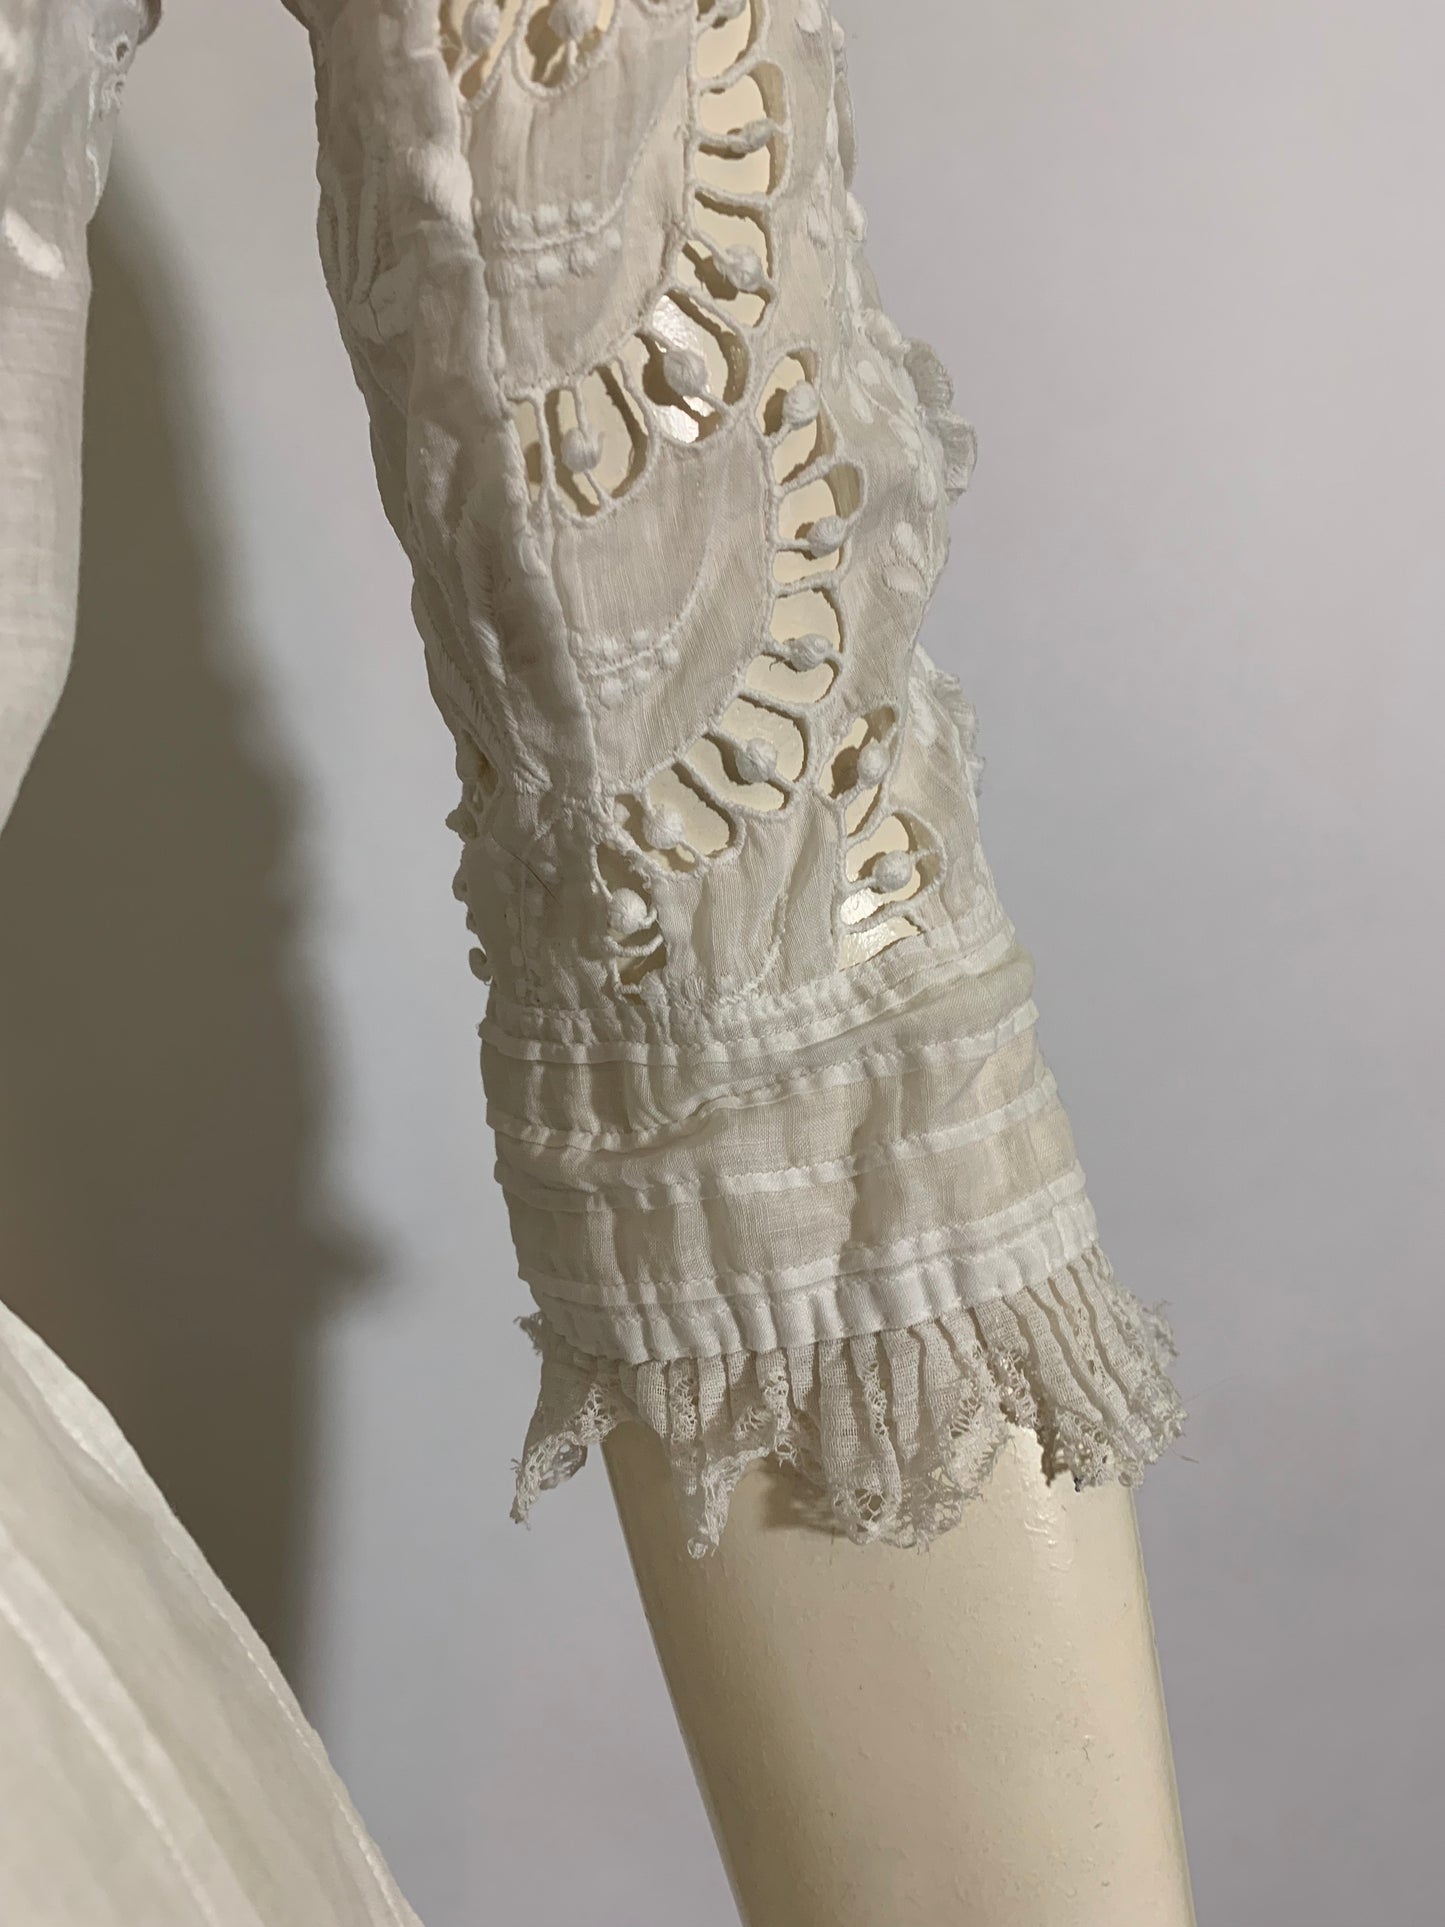 Tea Party Pretty Embroidered White Cotton Lace Dress circa 1910s